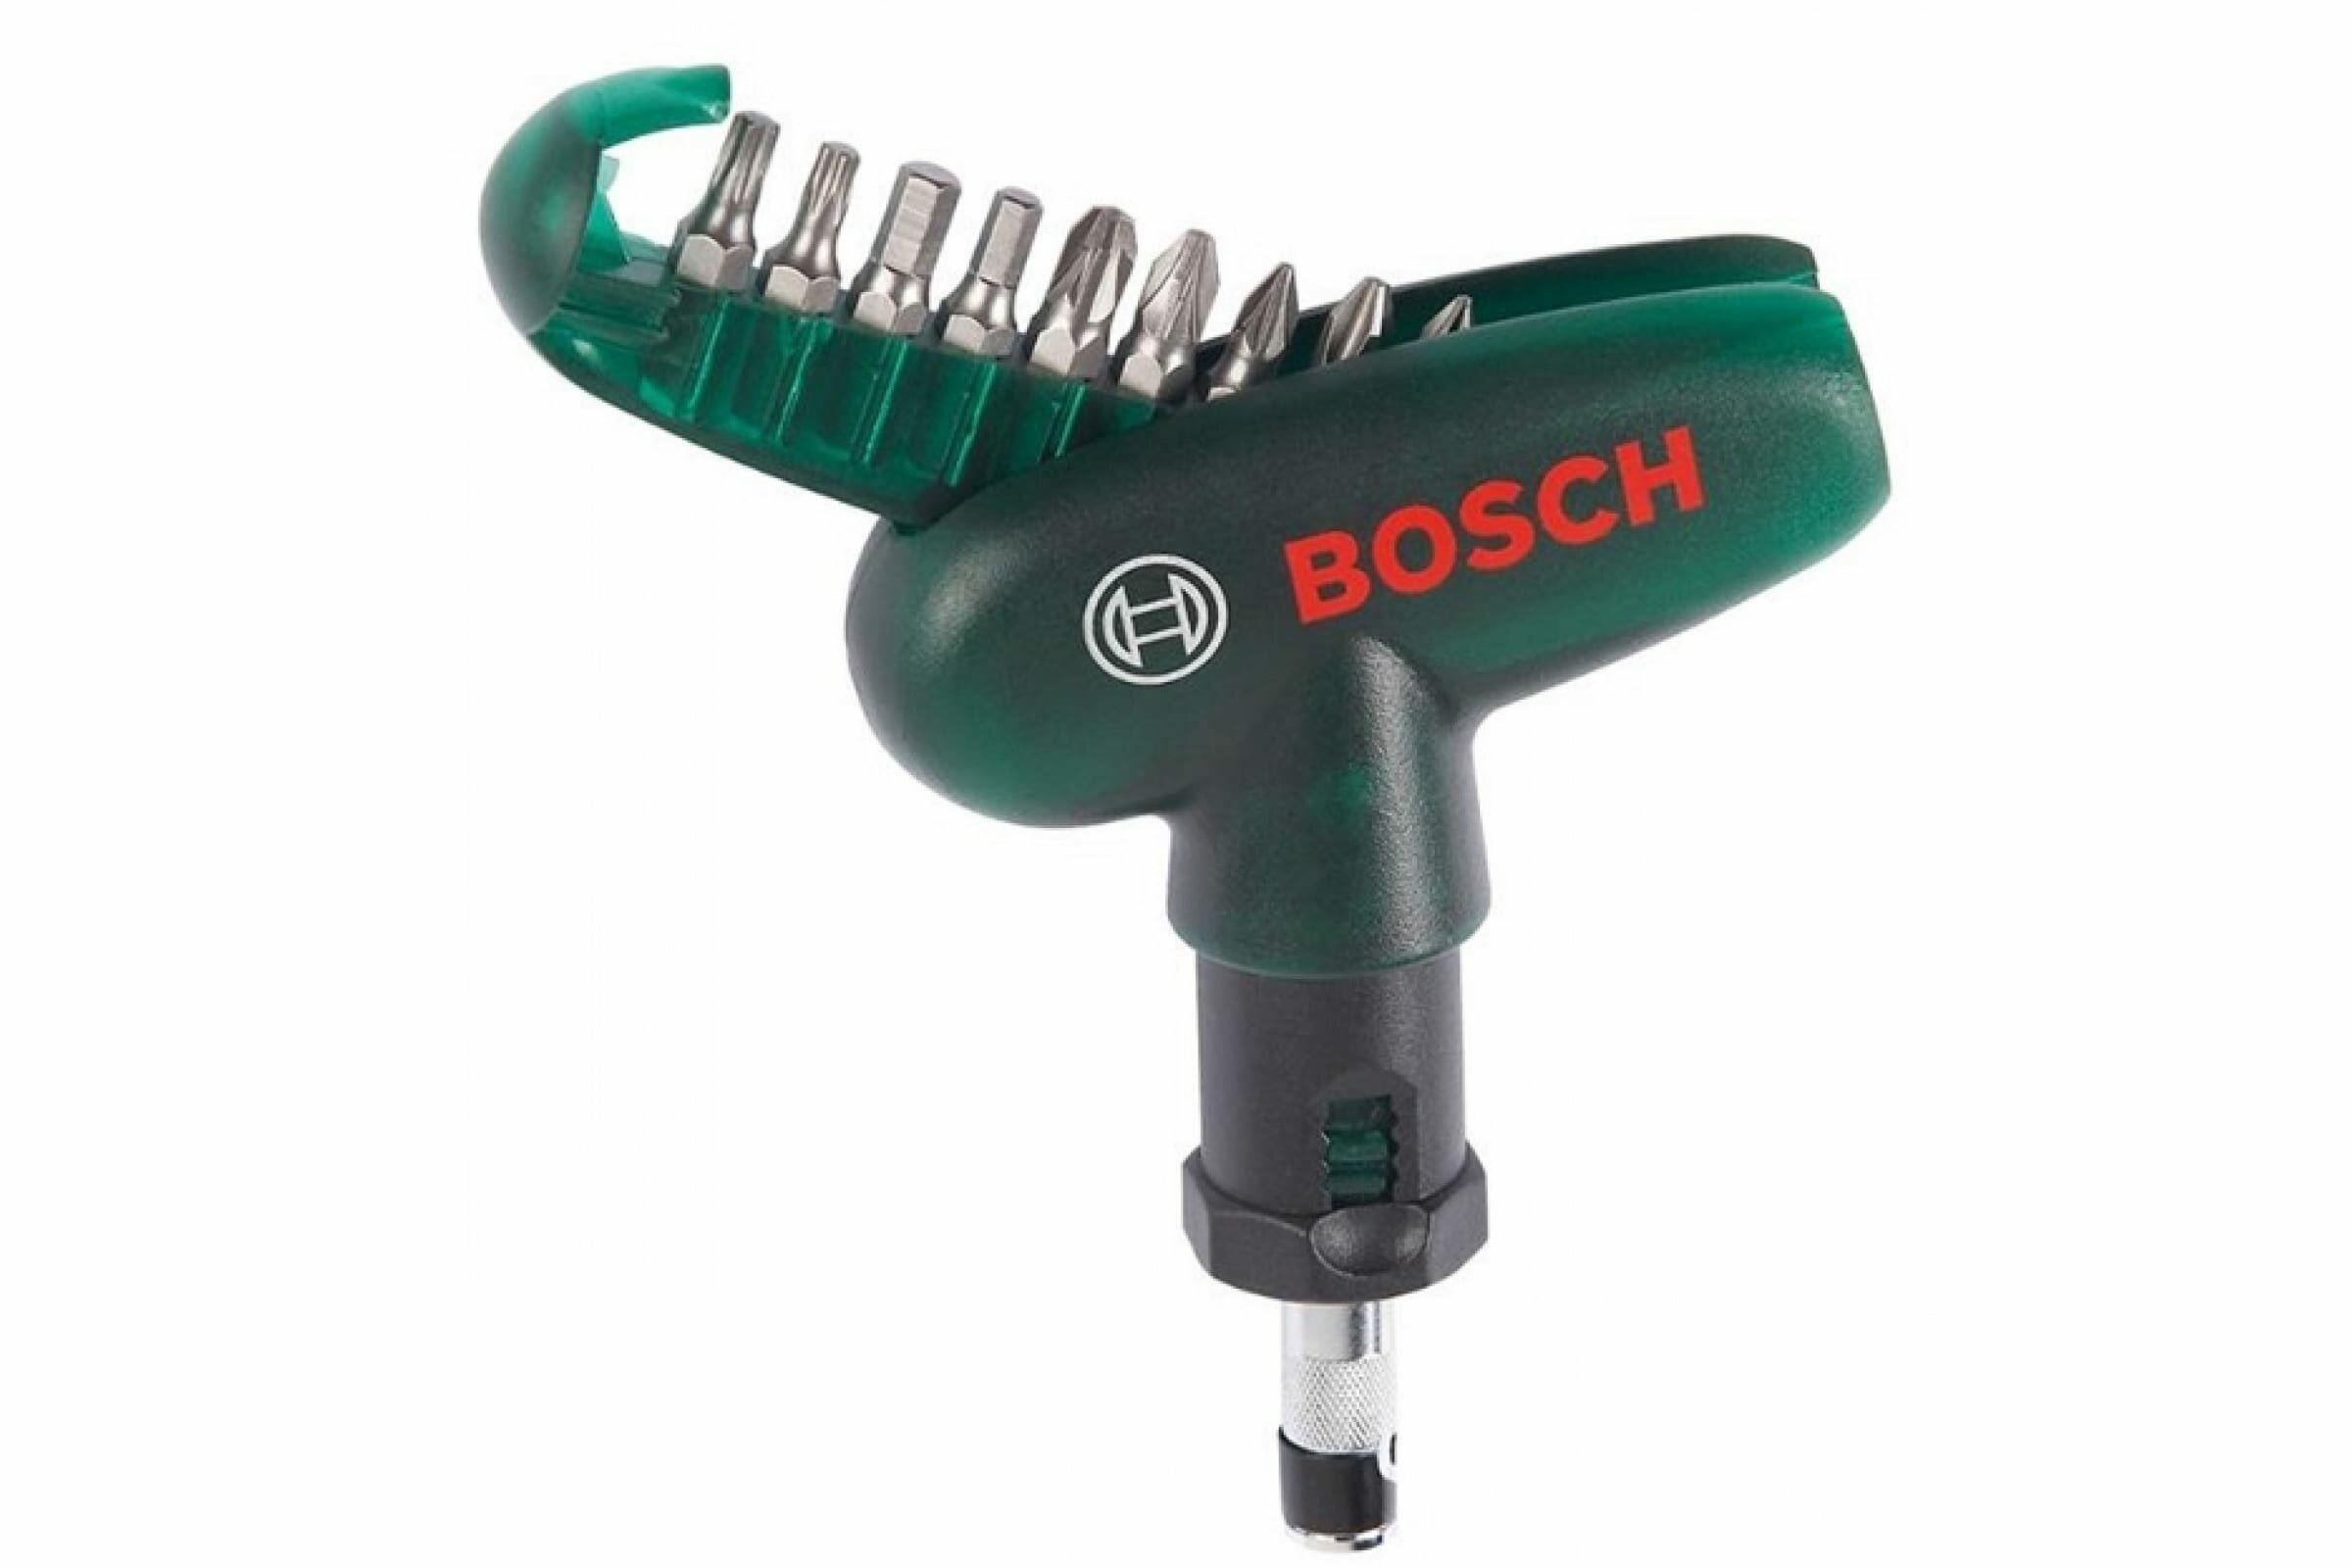   Bosch  9  (2607019510)